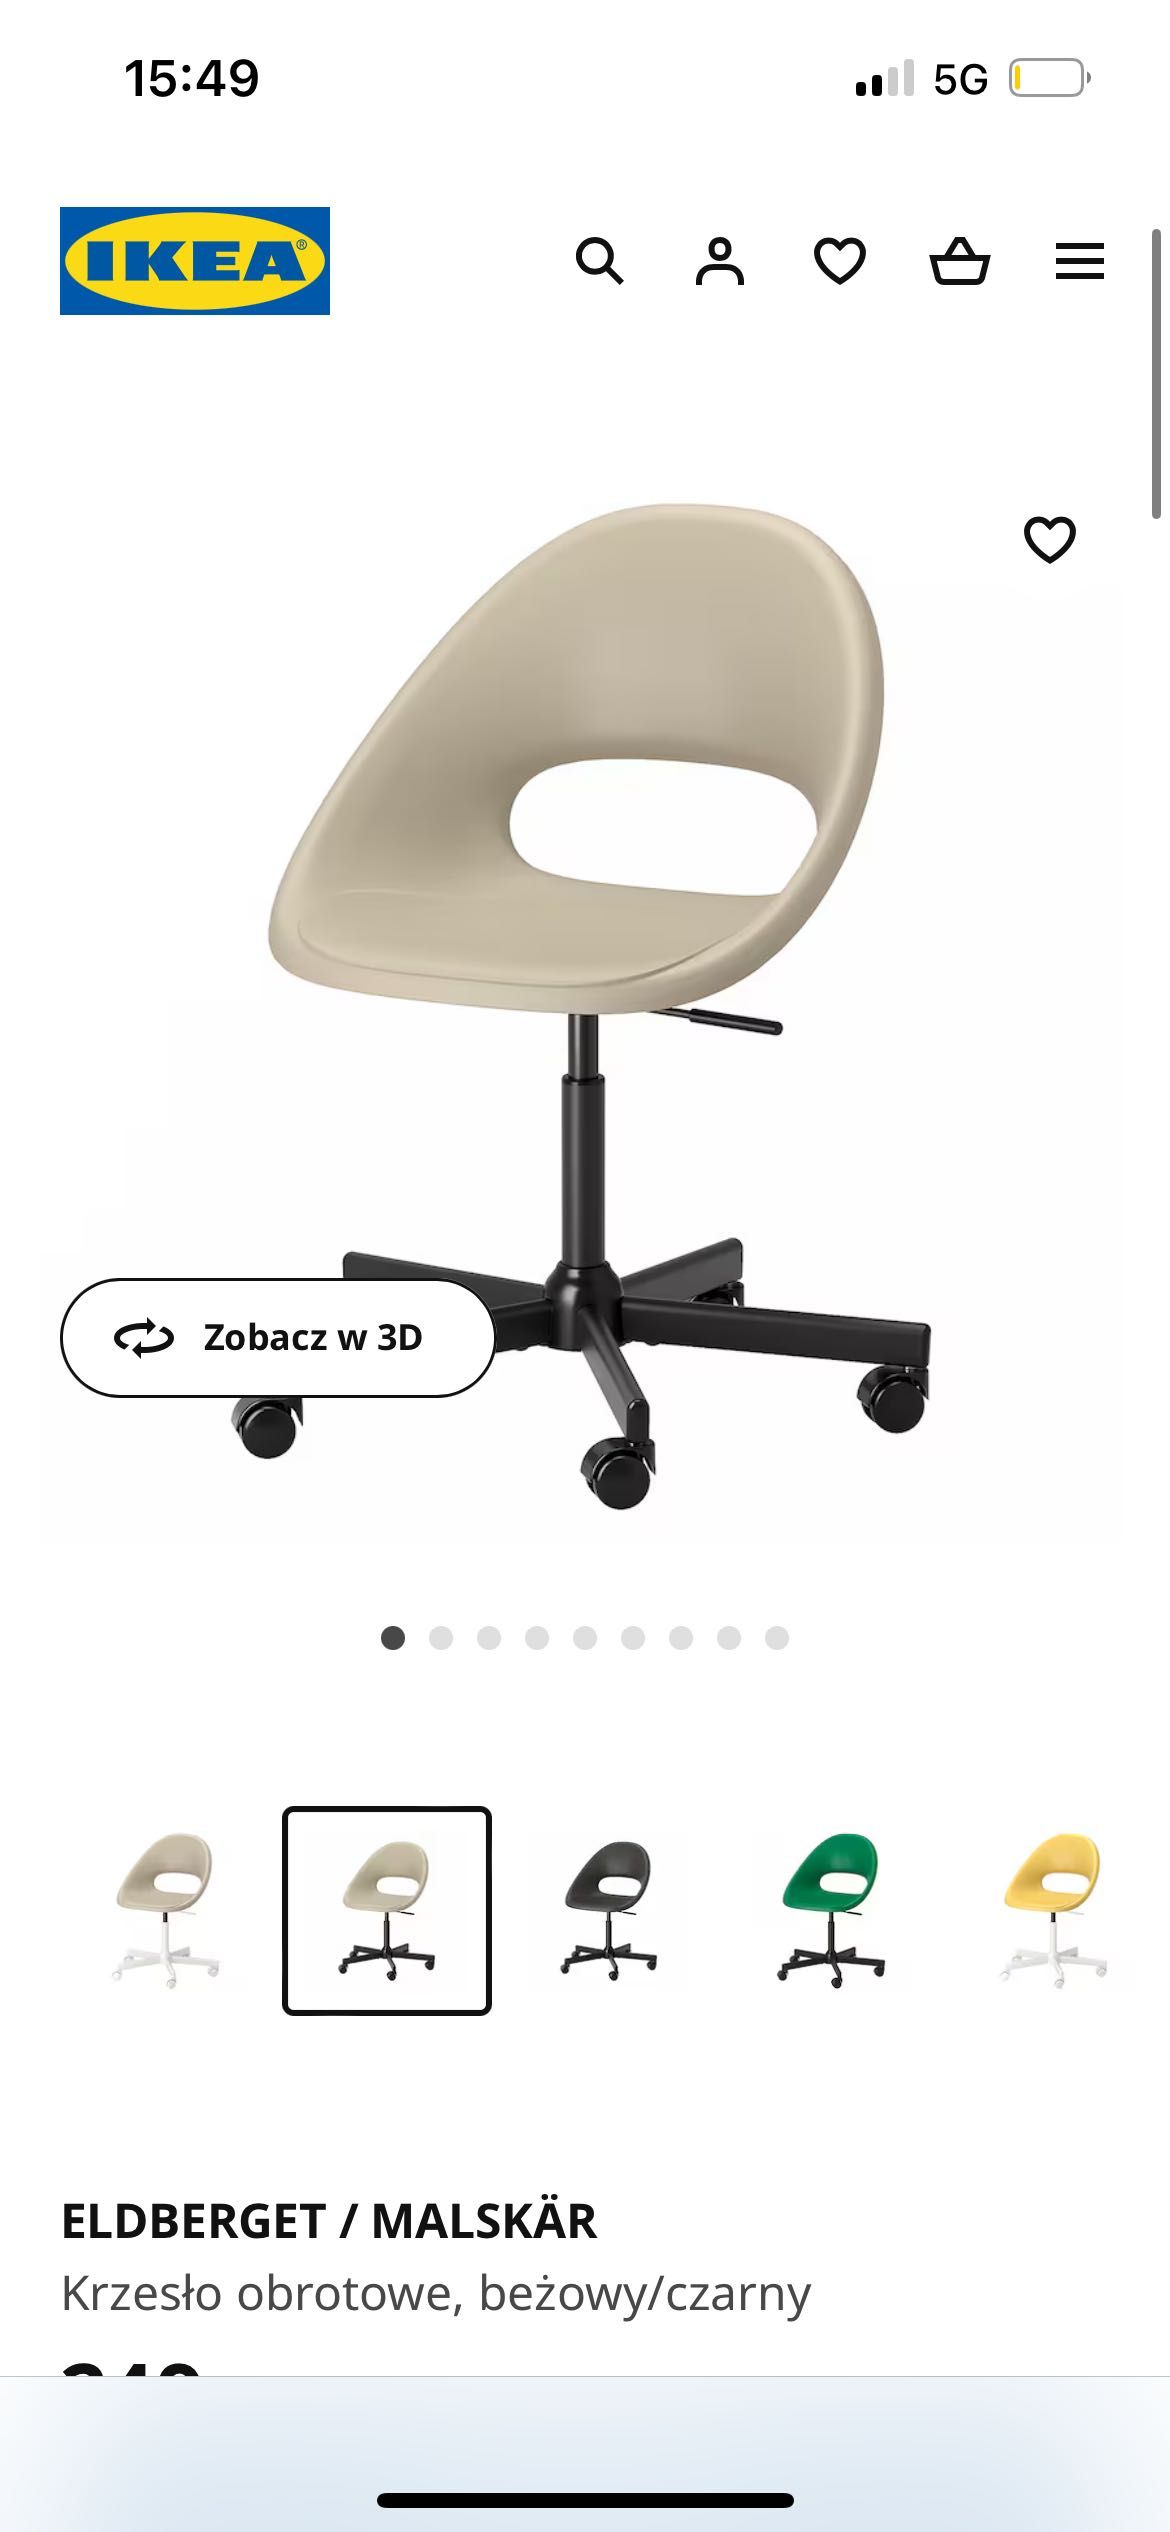 Sprzedam krzesło obrotowe z Ikea w stanie idealnym!!